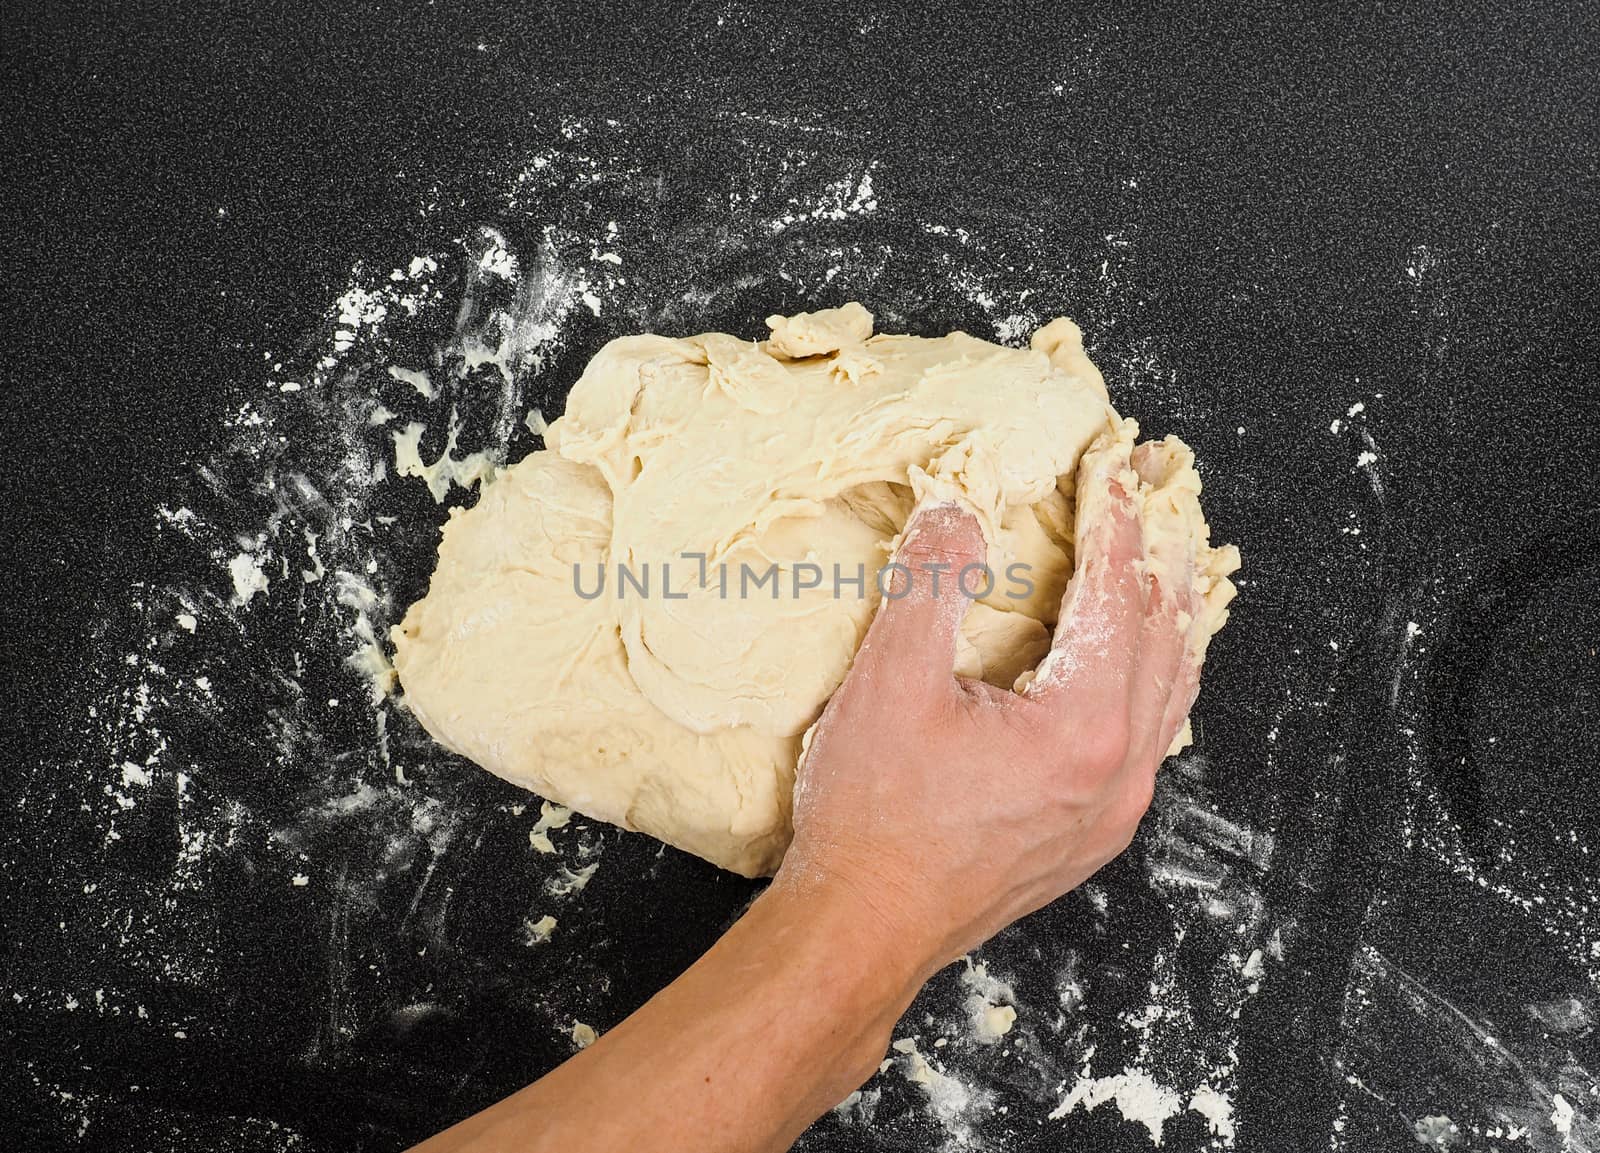 Hands kneading dough by Arvebettum